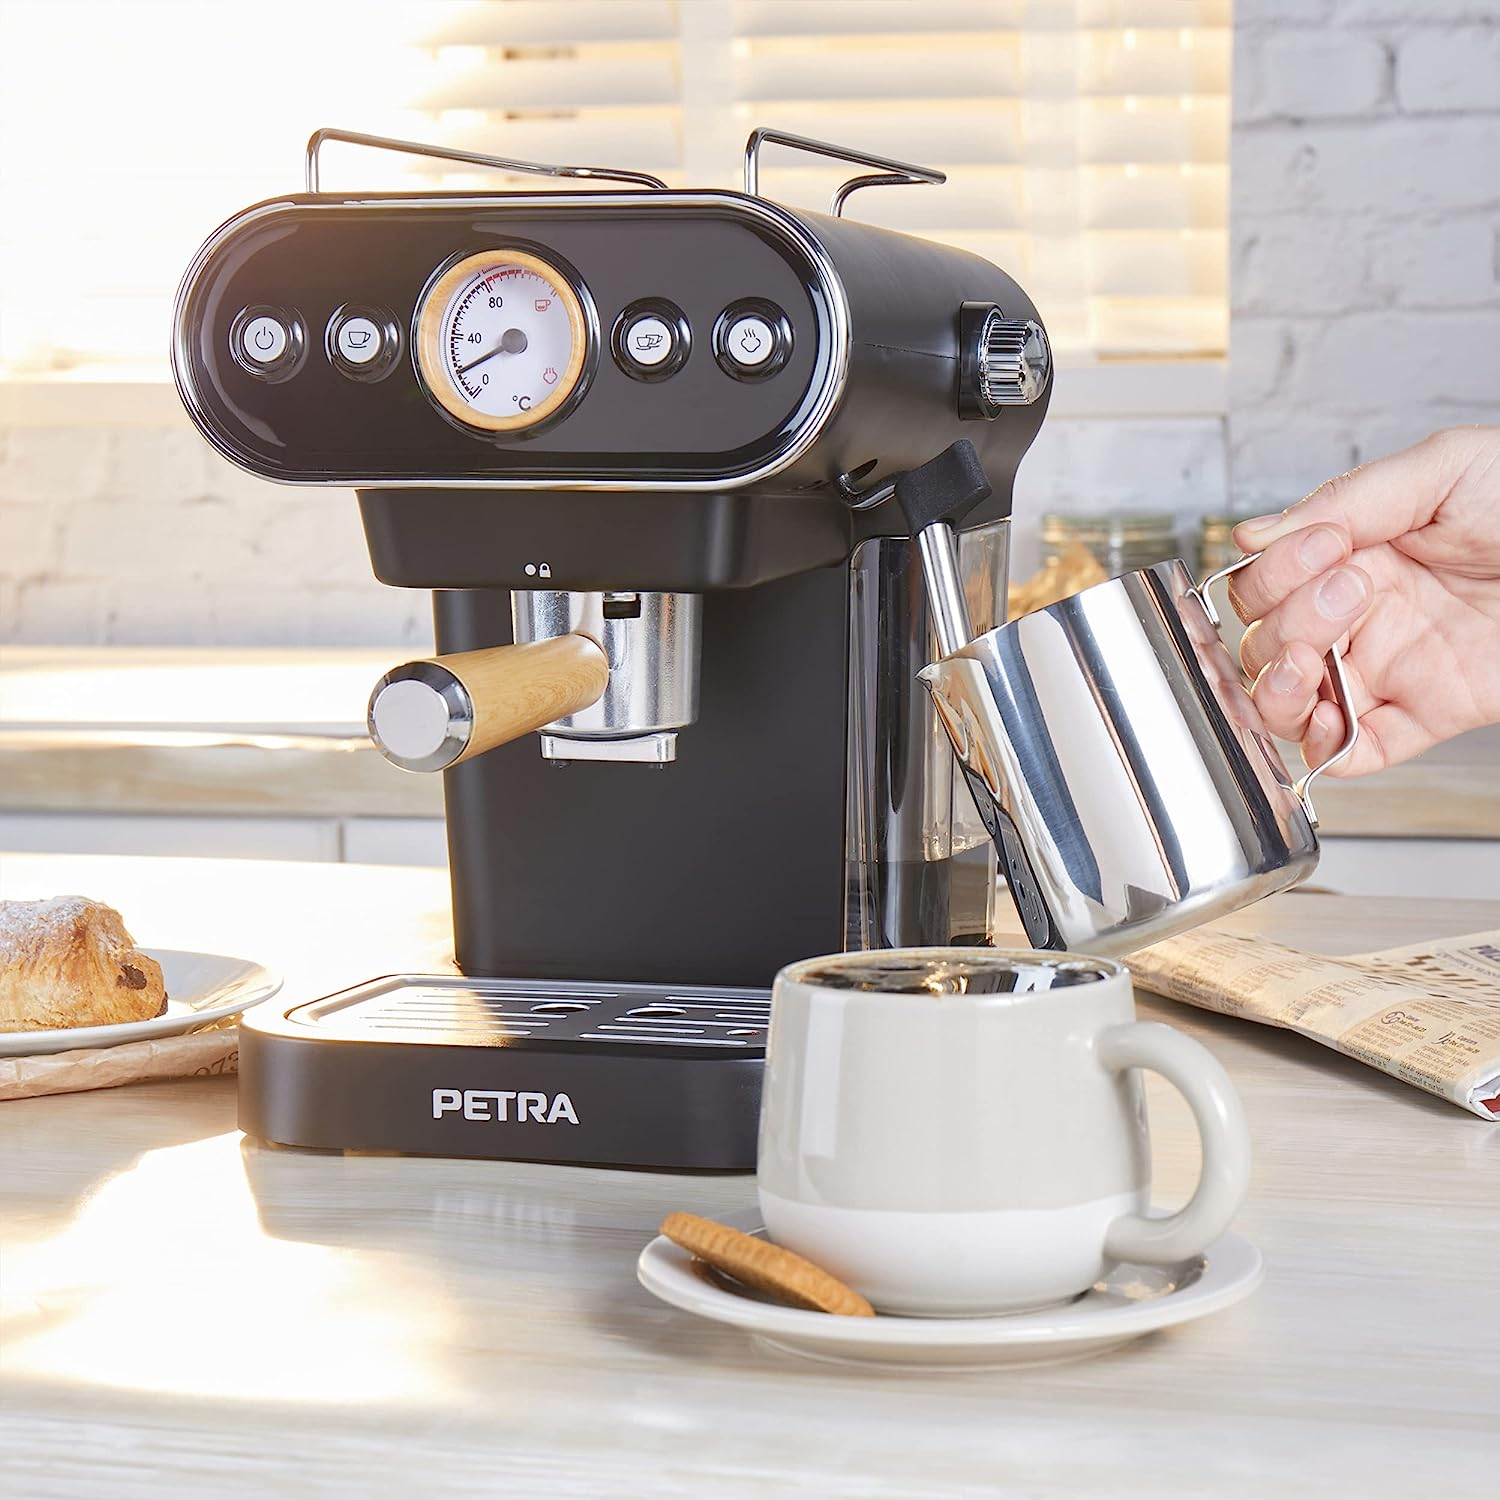 bar 19 Druckpumpe Espressomaschine PETRA 3in1 Kaffeemaschine Kapselmaschine Schwarz